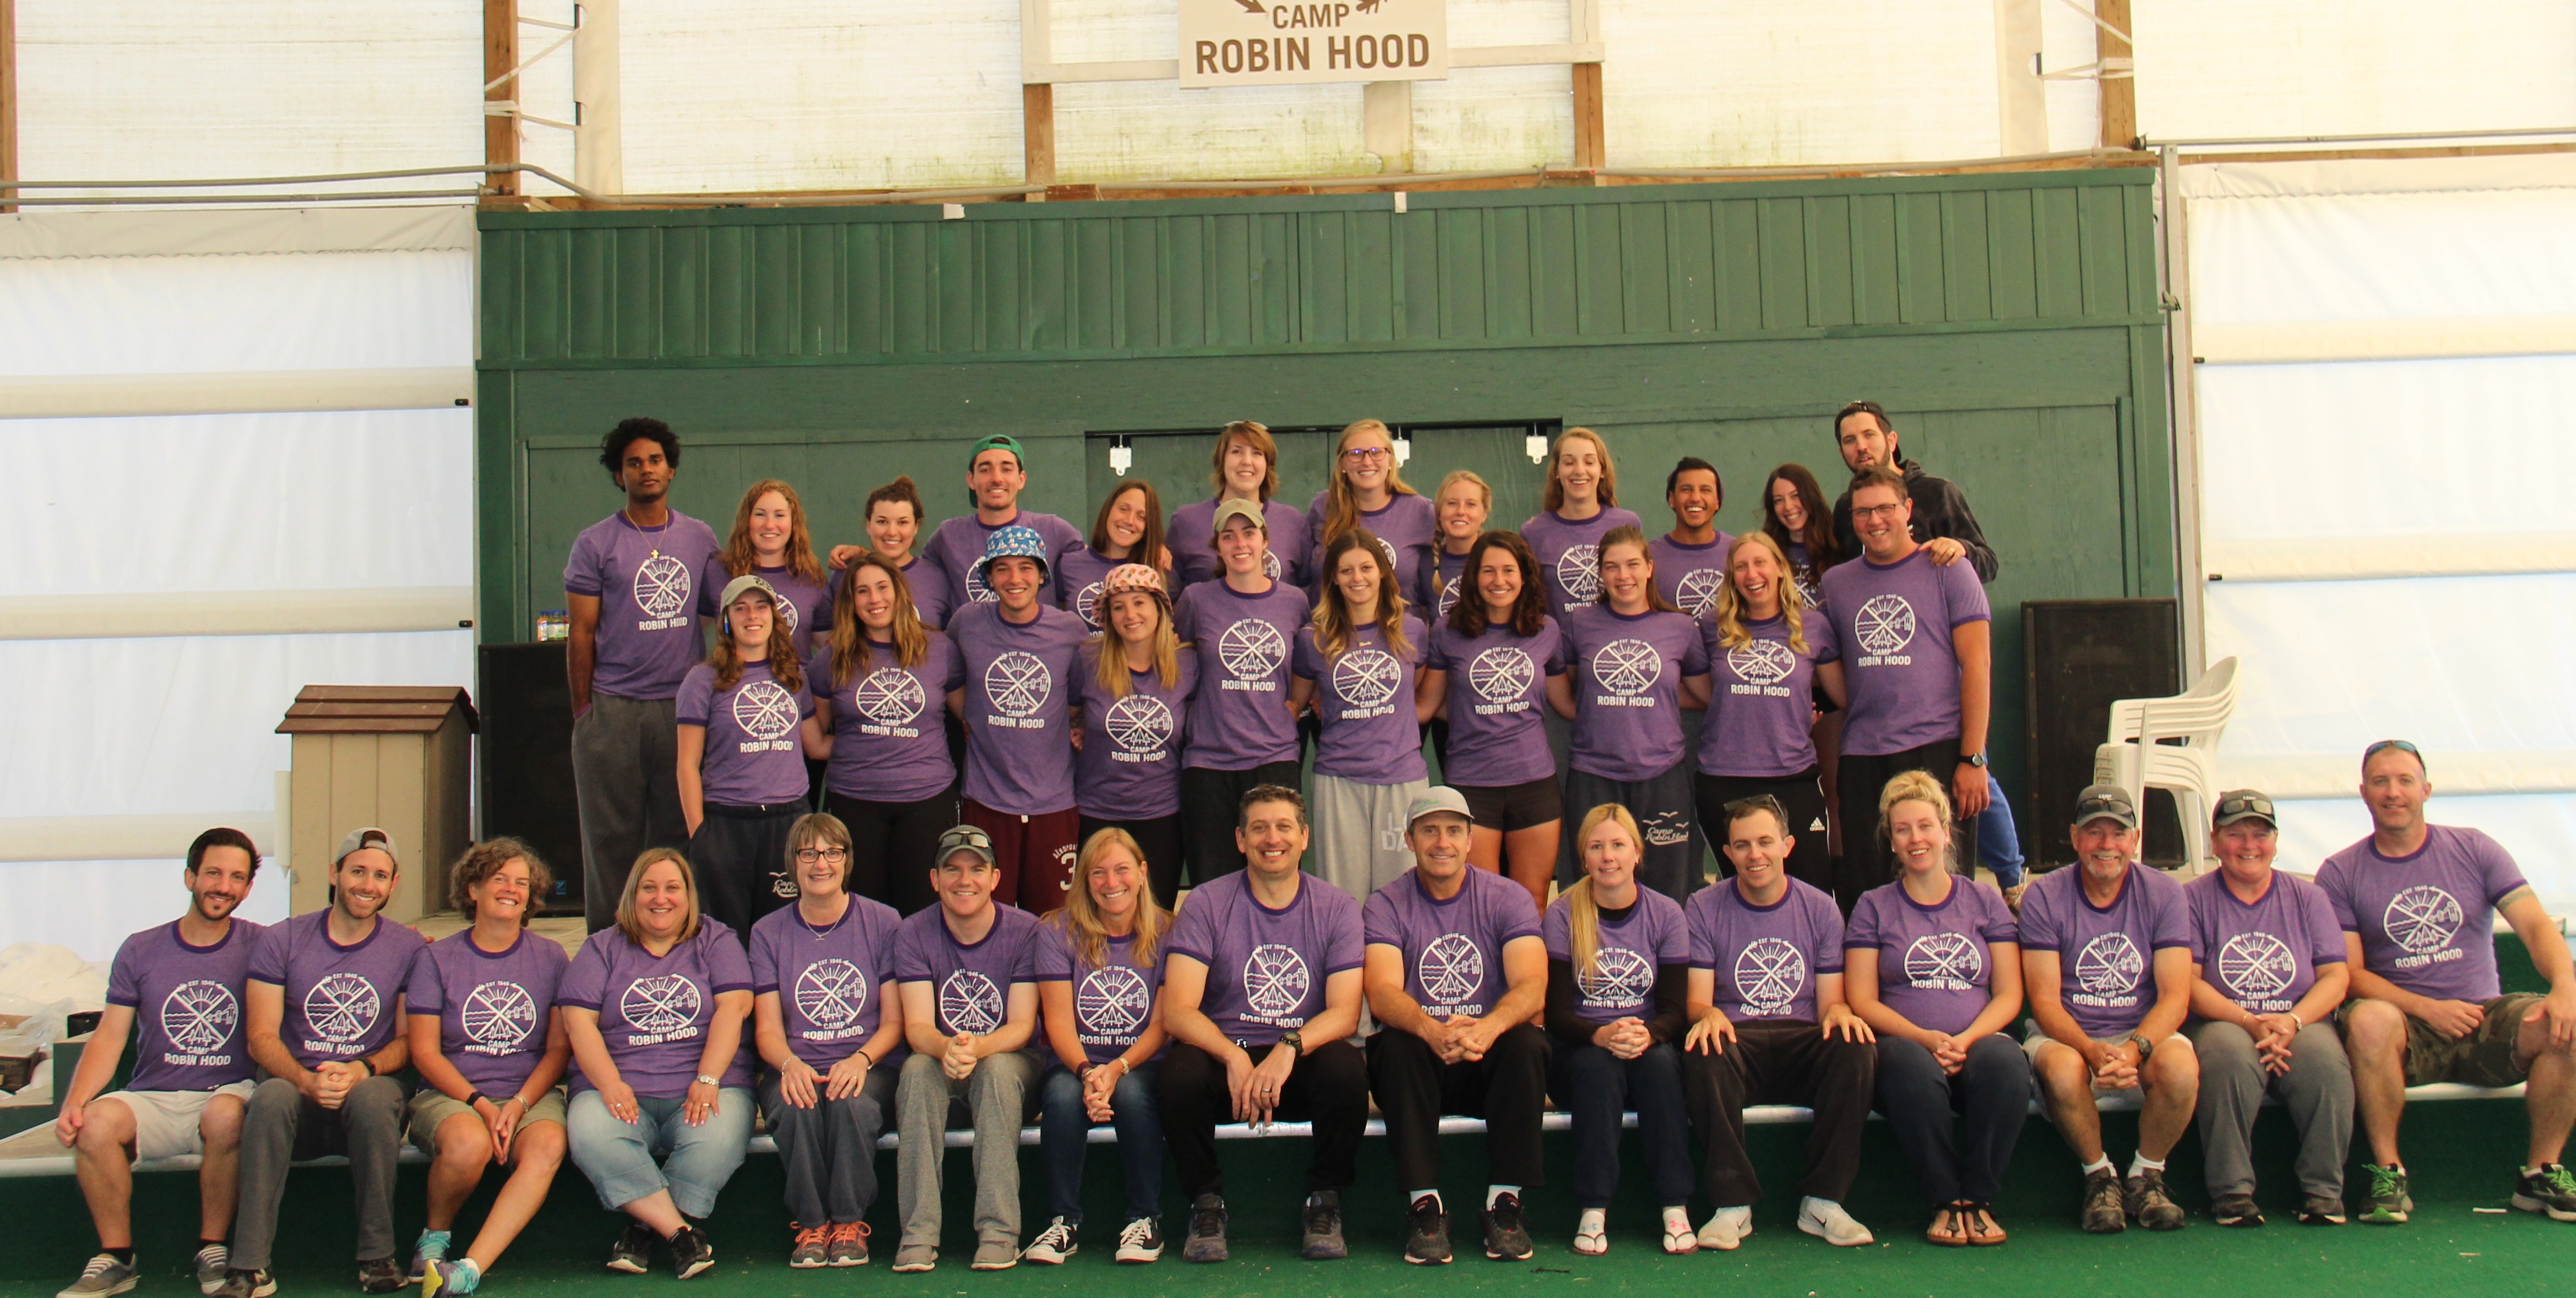 Camp Robin Hood's Senior Staff and Leadership Team